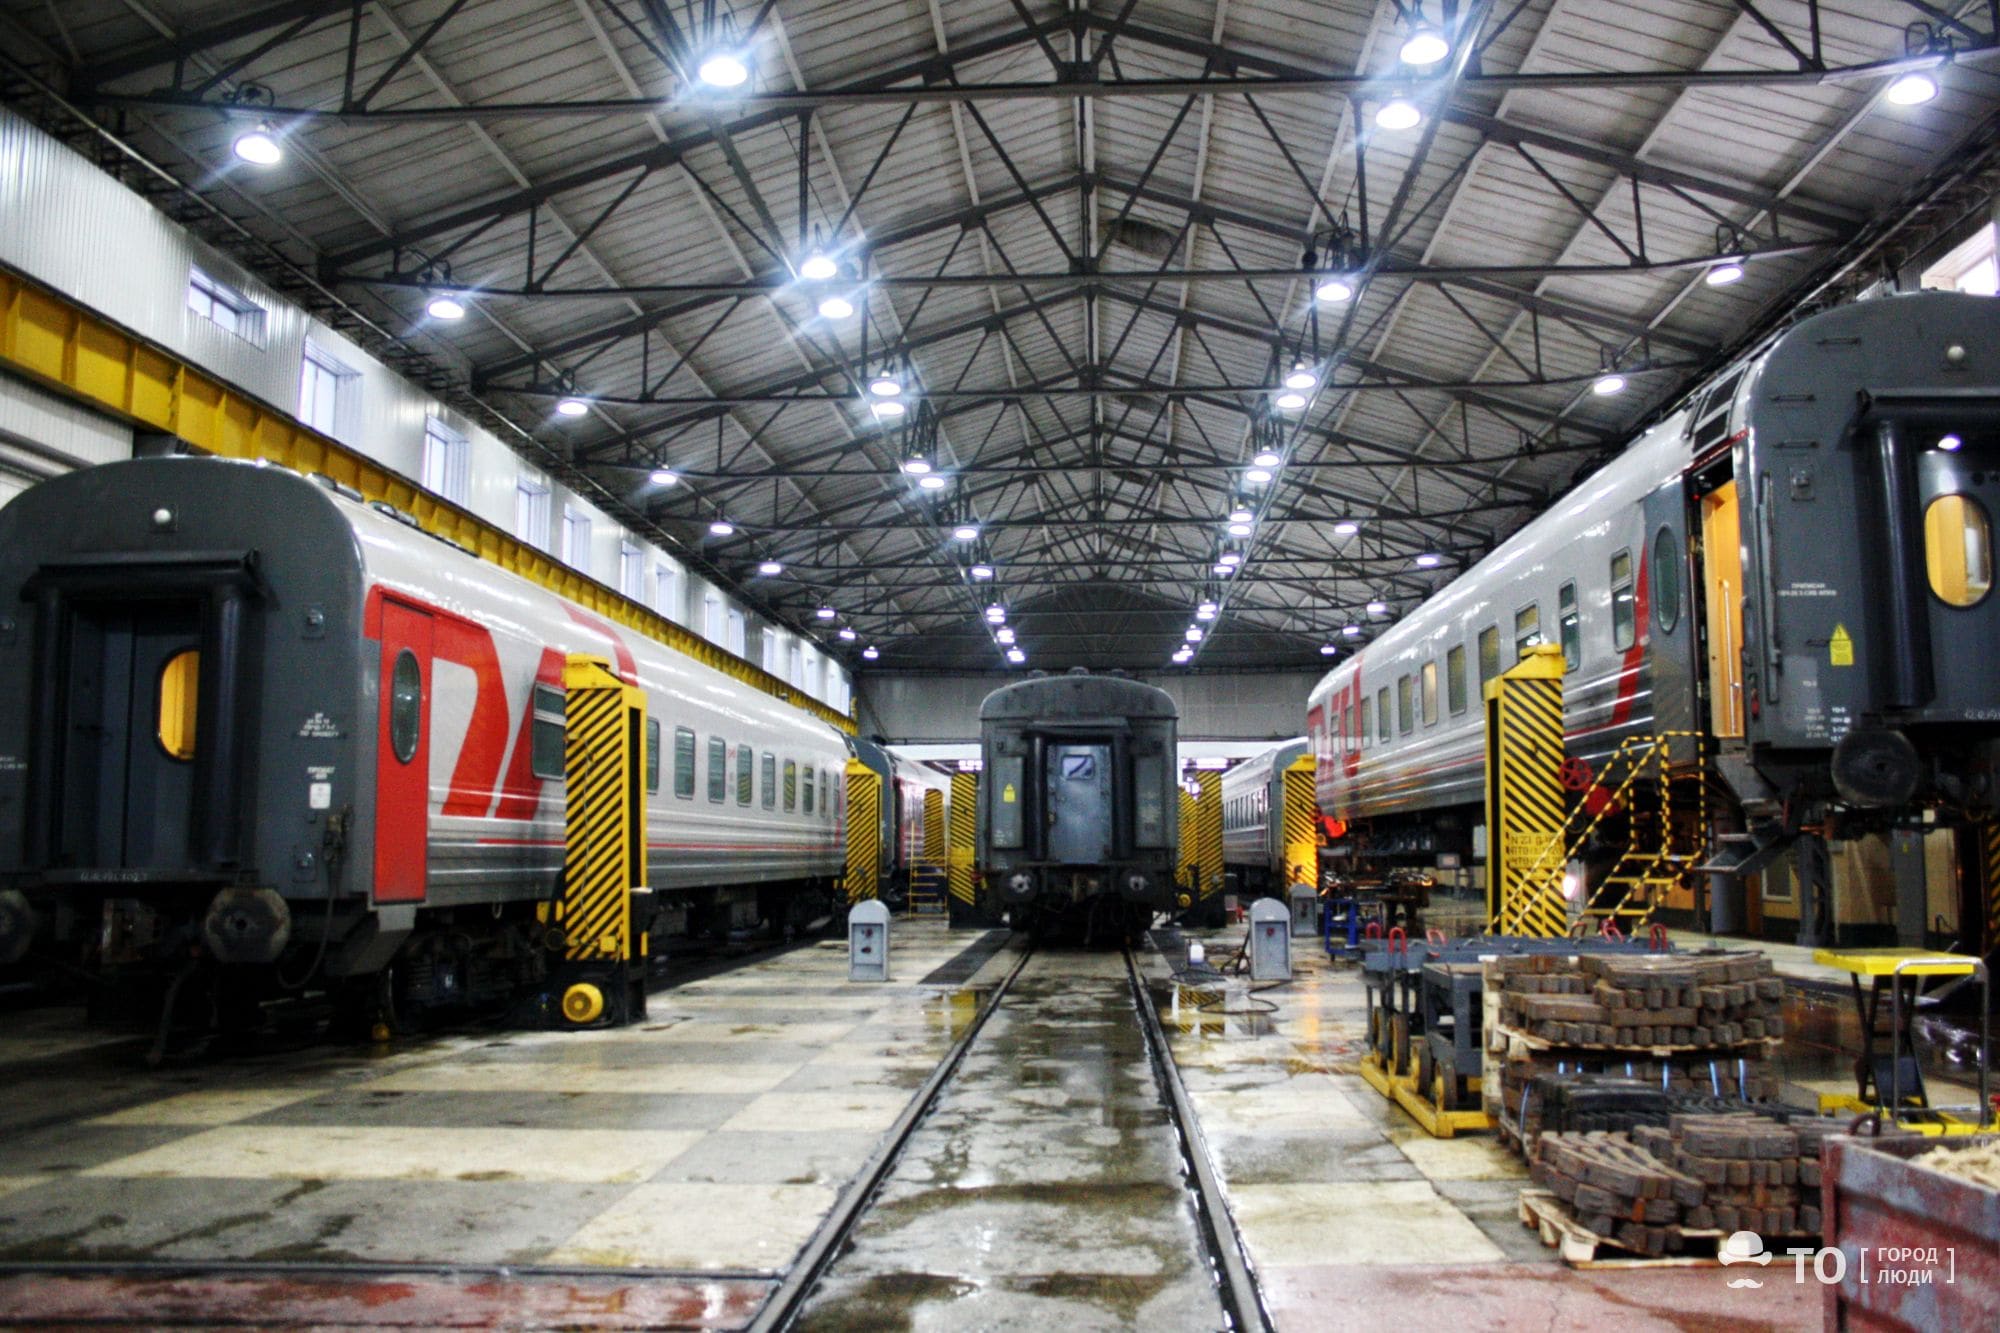 Как это работает, Станция: Томск, депо томск 2 как работает поезда вагоны ремонтируют Американский паровоз, гомогенизатор и 2285 колесных пар. Как устроено депо на Томске-2